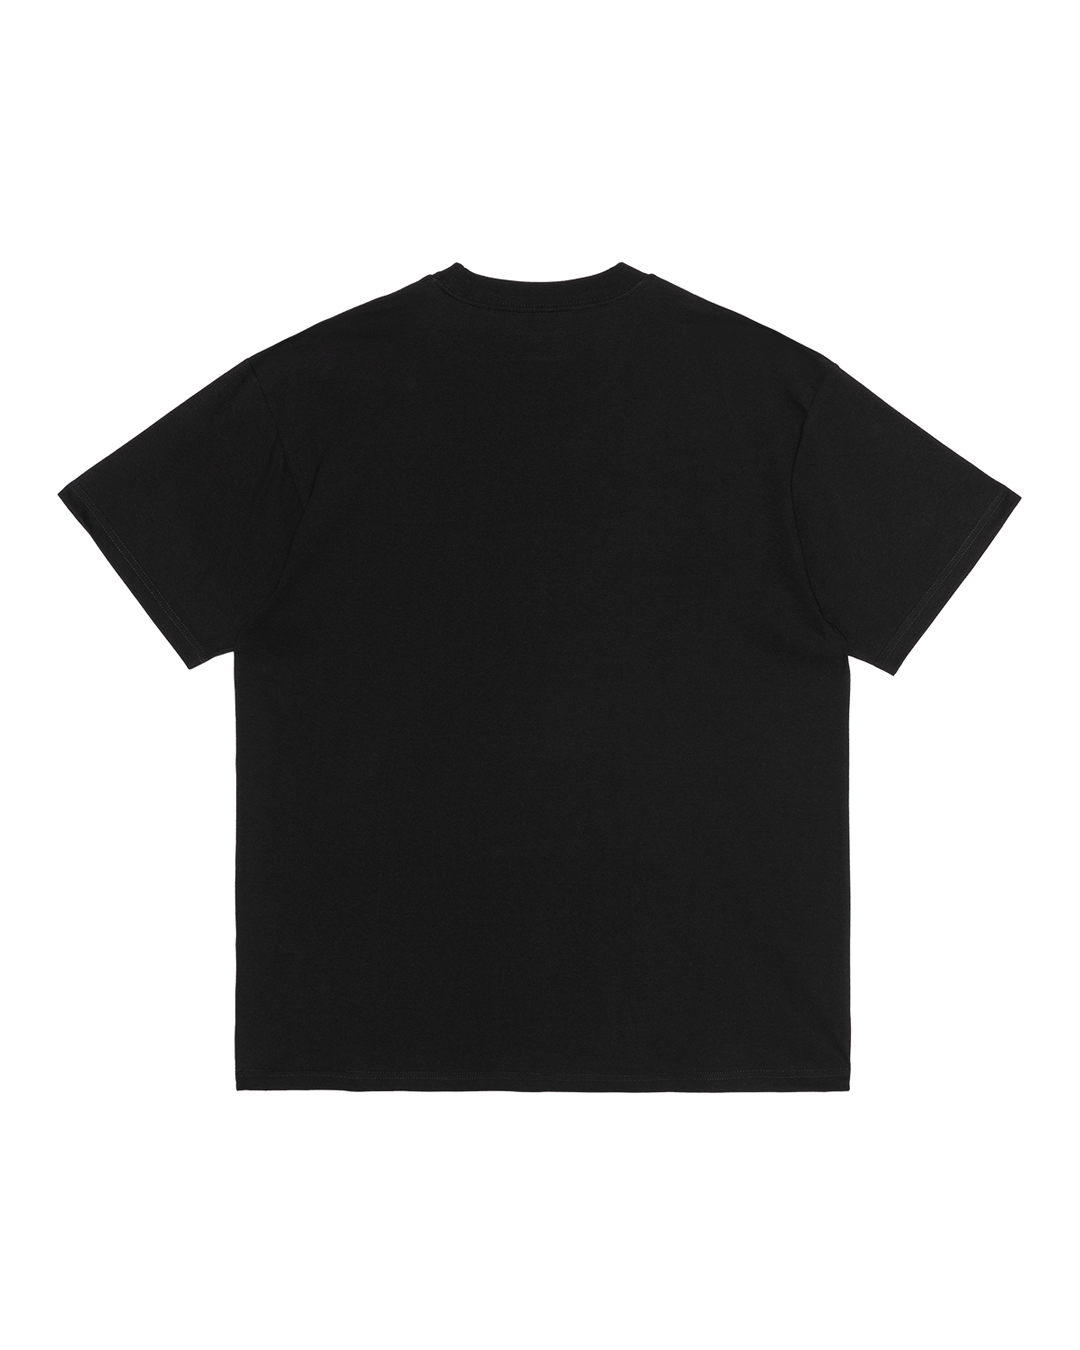 Meatloaf SS T-Shirt Black